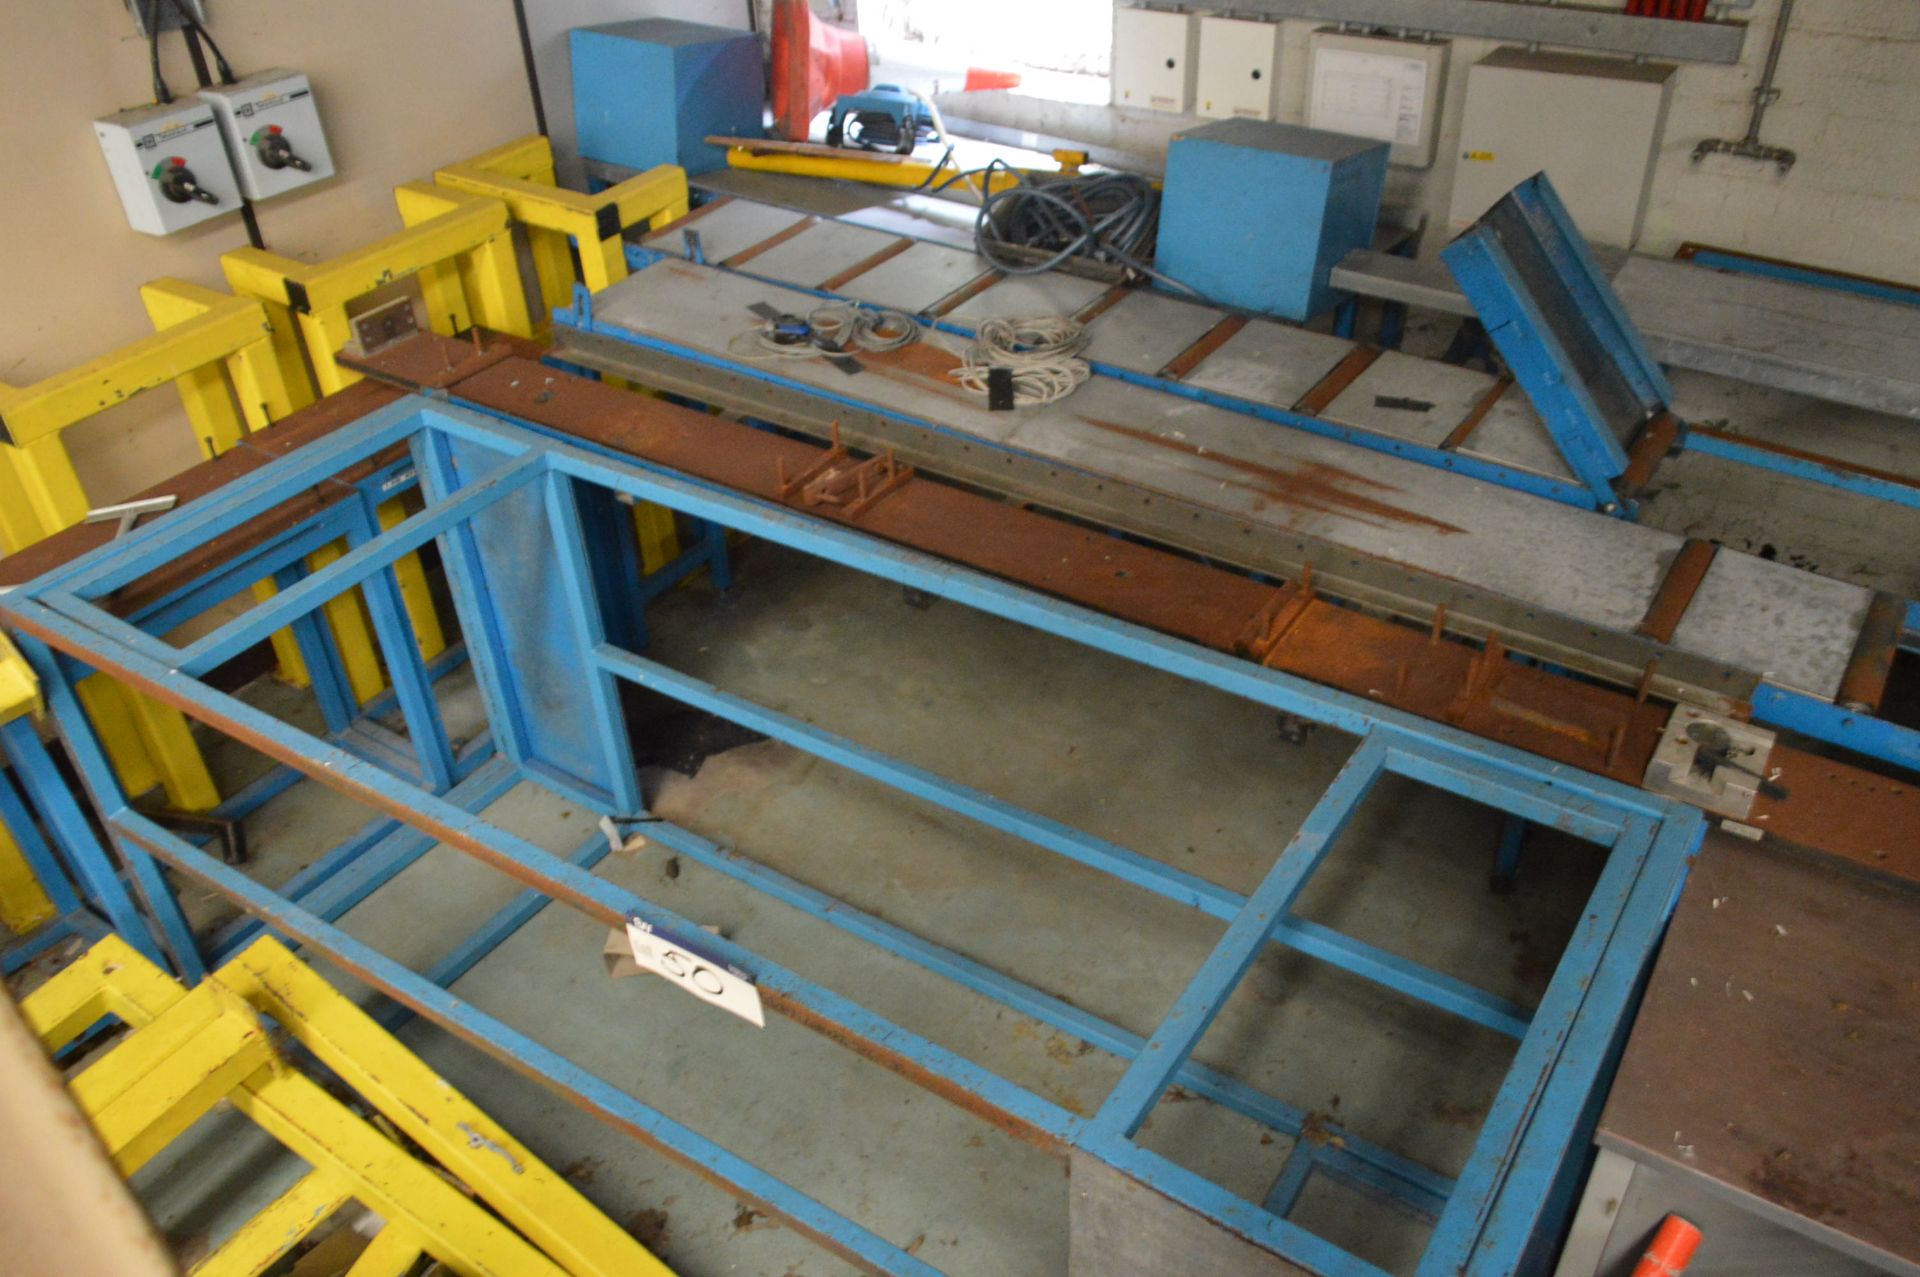 Roller Conveyor, Fabricated Steel Stands & Equipment, in corner of room - Bild 2 aus 2